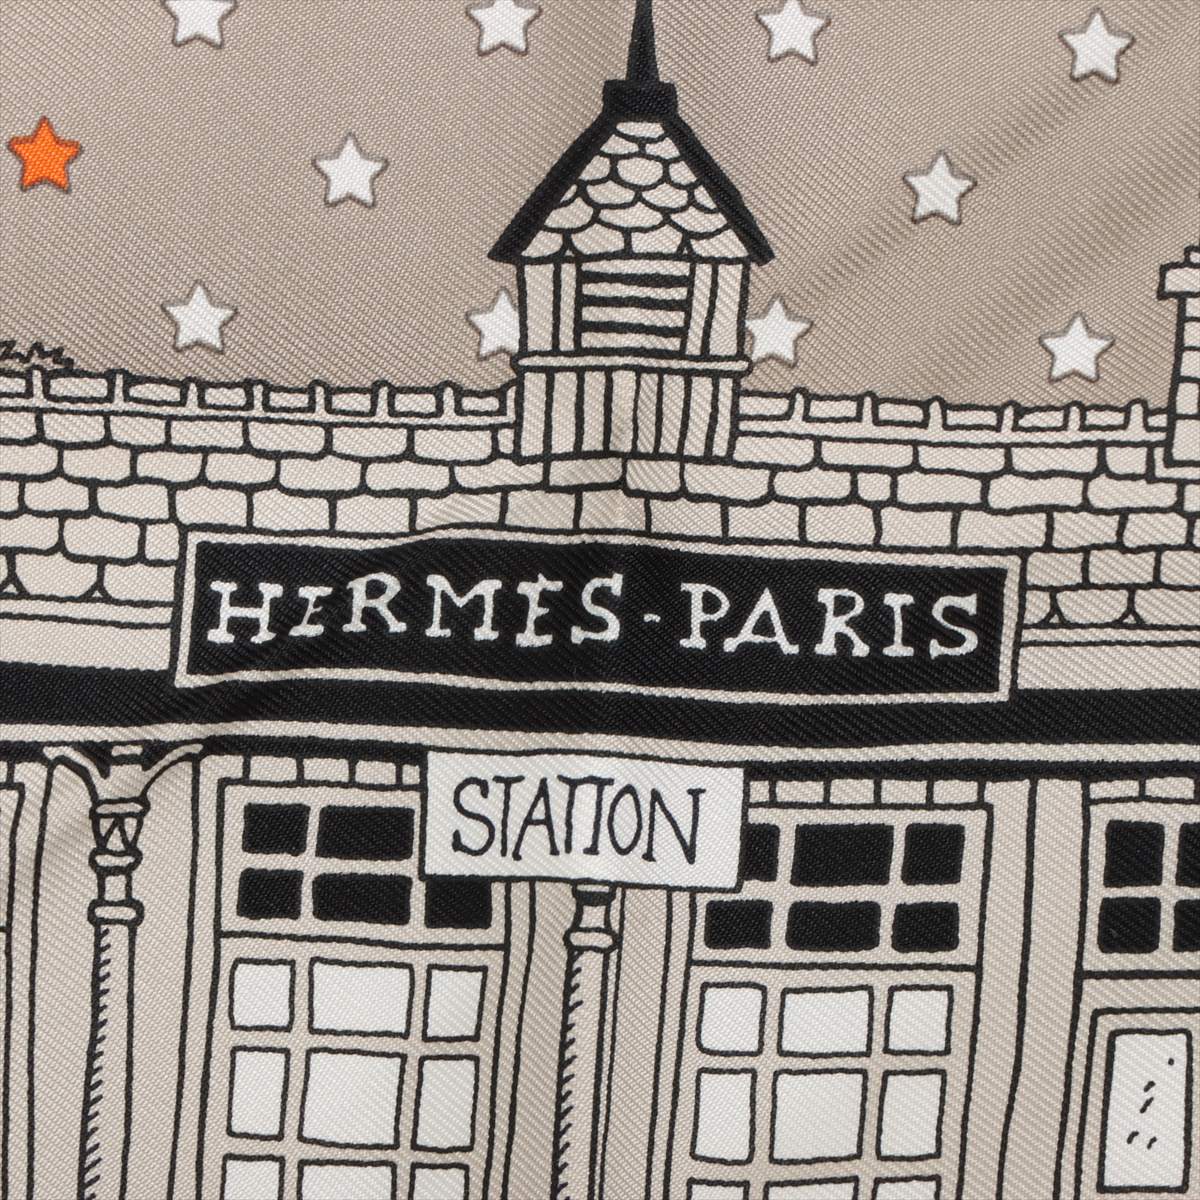 エルメス カレ55 Hermes Paris Station Bandana エルメス パリステーション バンダナ スカーフ シルク グレー